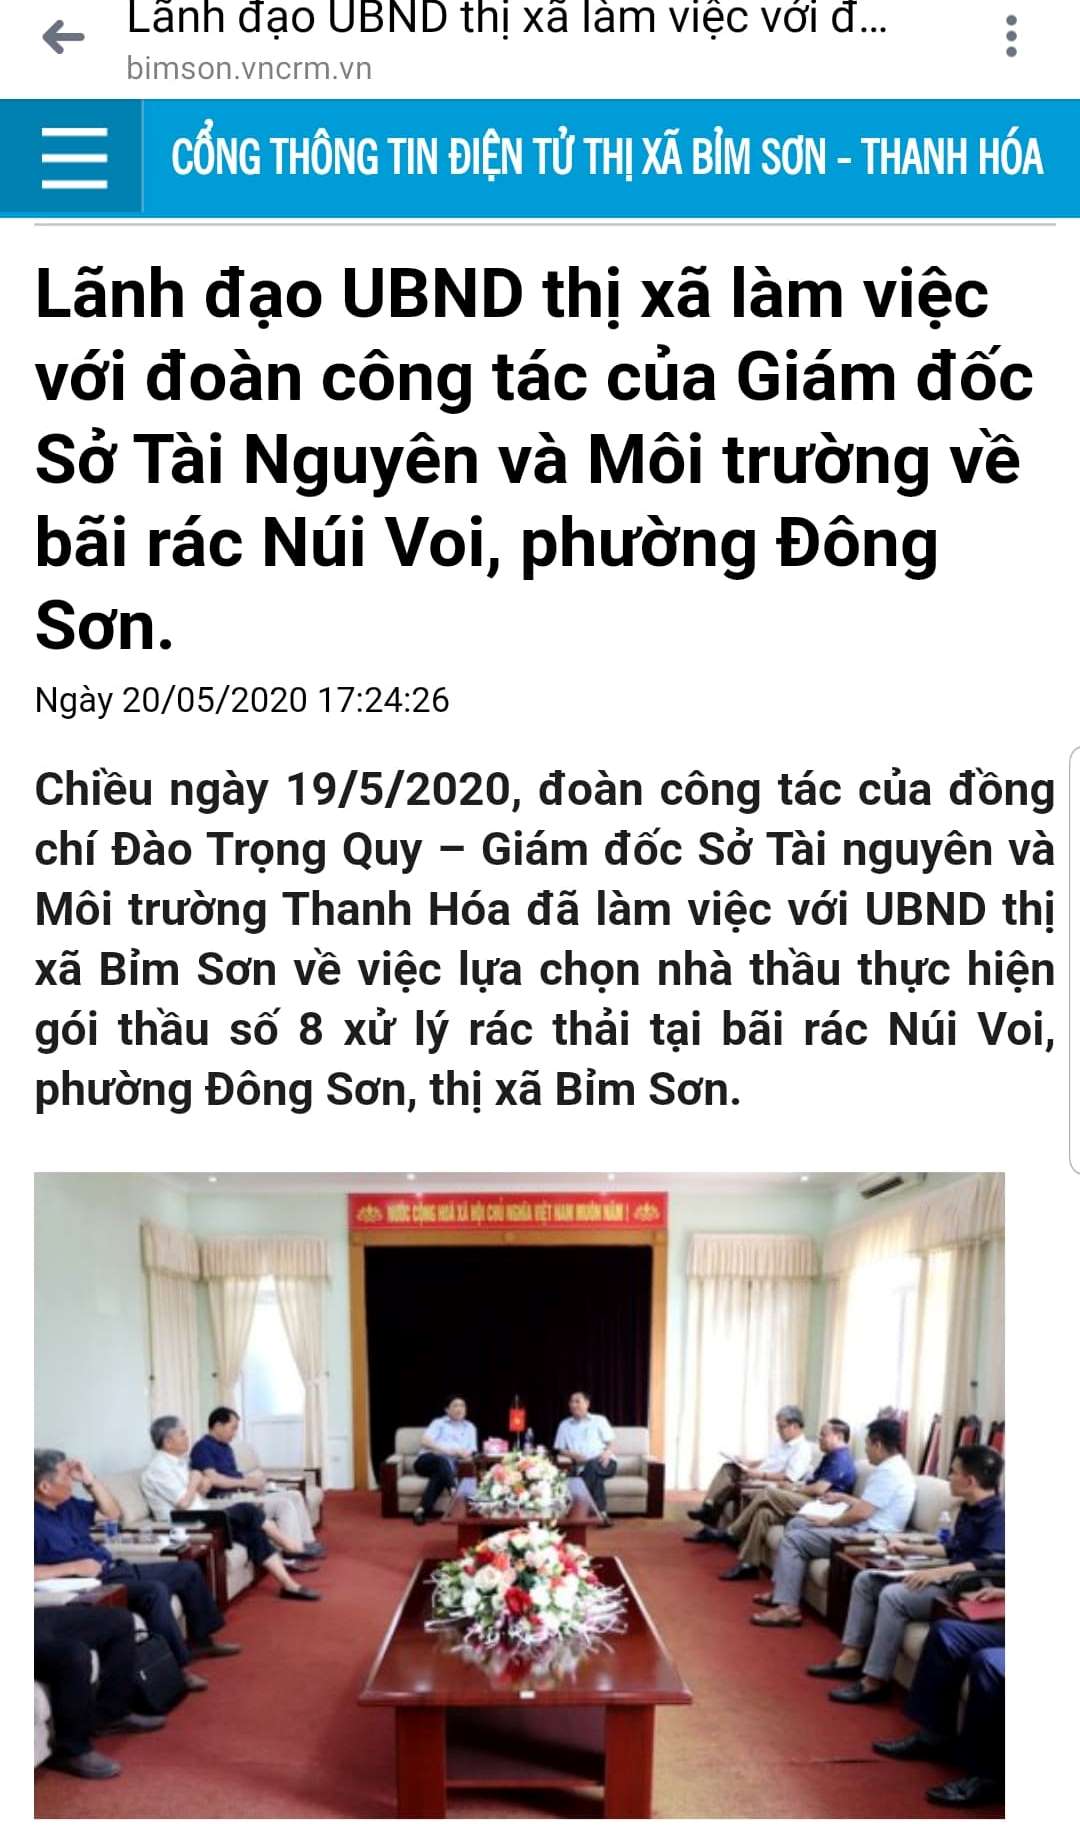 đoàn công tác của ông Đào Trọng Quy – Giám đốc Sở TN&MT Thanh Hóa đã làm việc với với UBND thị xã Bỉm Sơn